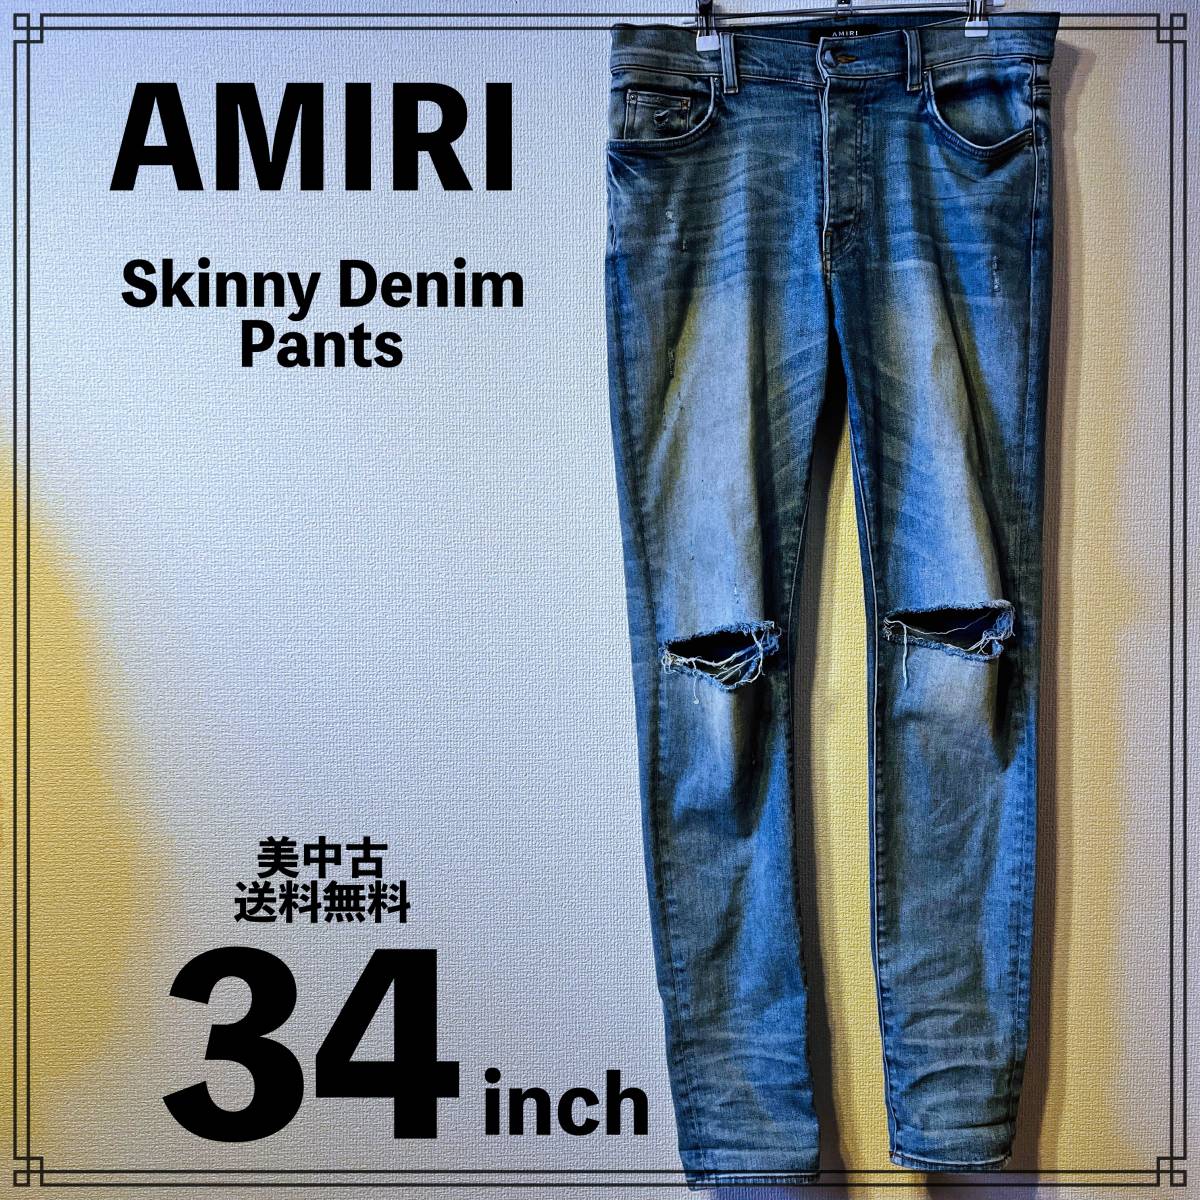 【美】AMIRI Skinny Denim Pants 34インチ アミリ スキニー デニム パンツ